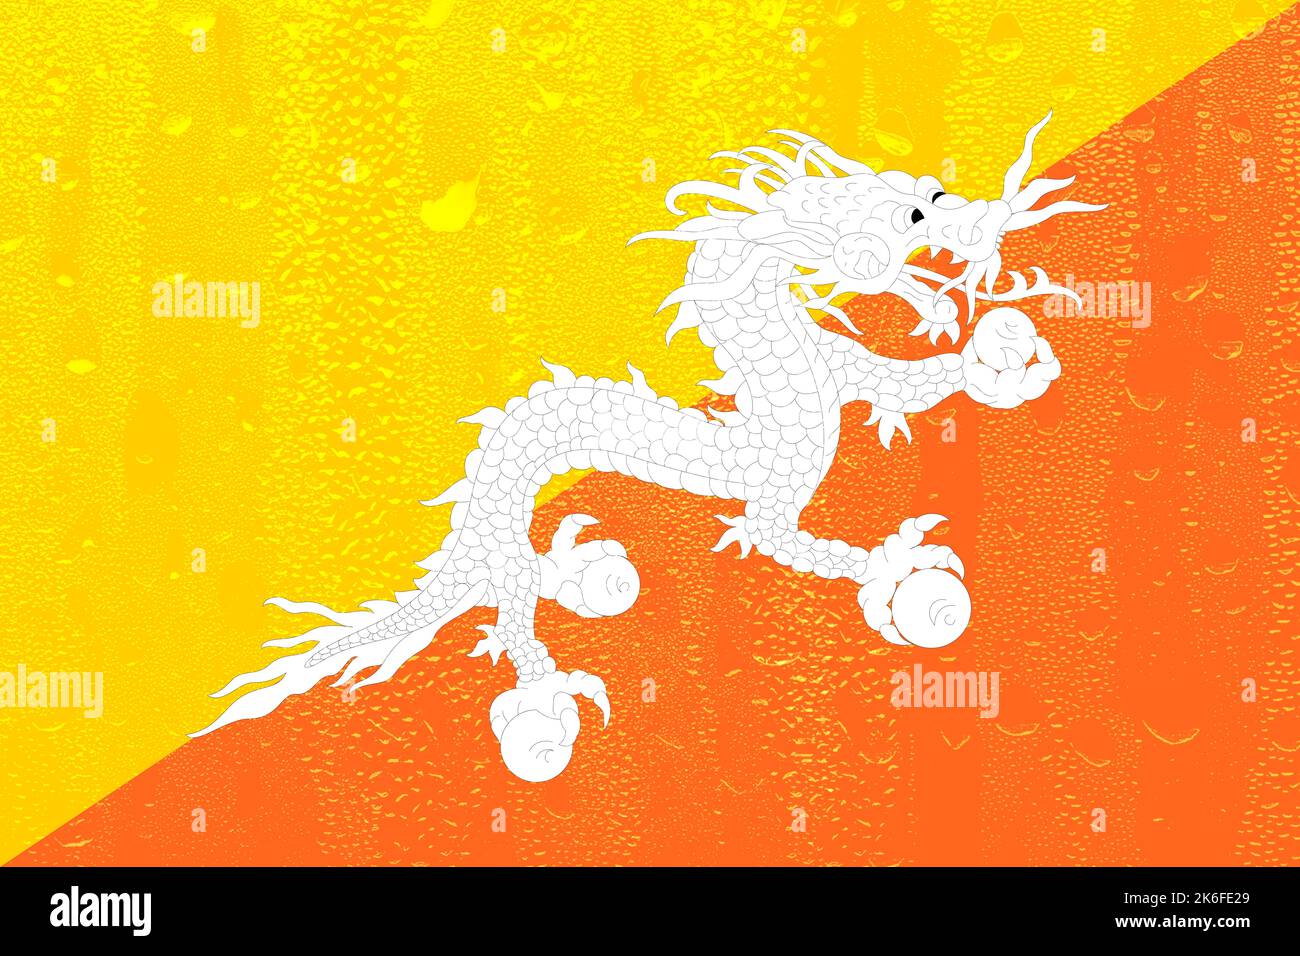 Cờ Bhutan - Biểu tượng của sự thịnh vượng và hạnh phúc của đất nước Bhutan, với hình ảnh con rồng được lồng ghép một cách tinh tế. Thật tuyệt vời khi được chiêm ngưỡng những nét đẹp tinh tế này qua hình ảnh cờ Bhutan.